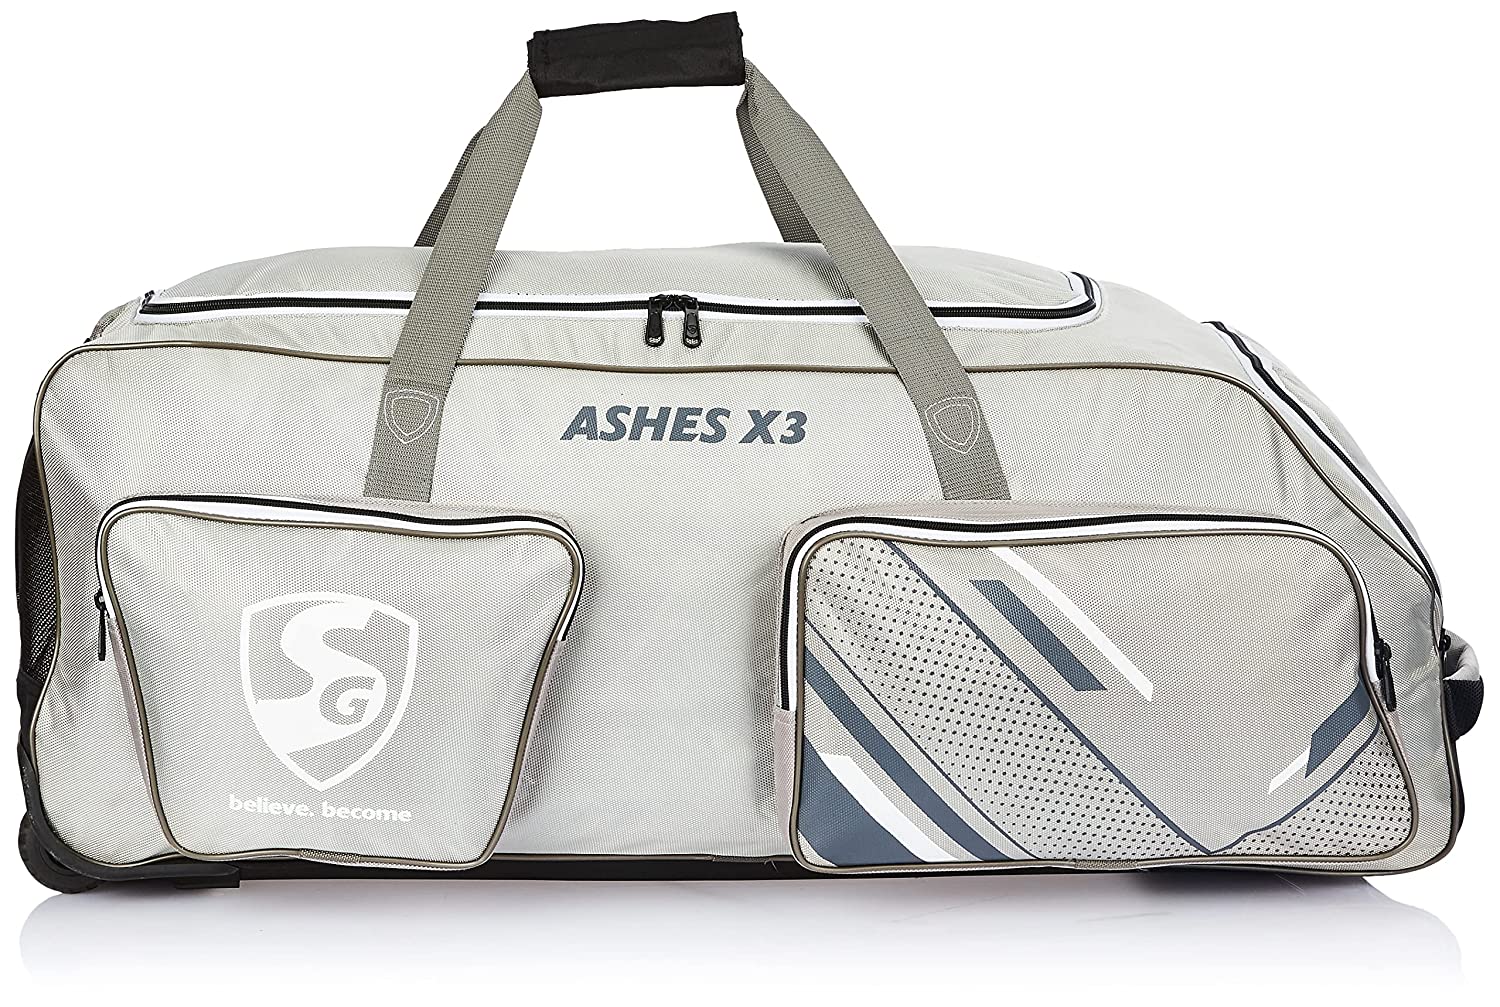 SG ASHES X3 WHEELIE BAG